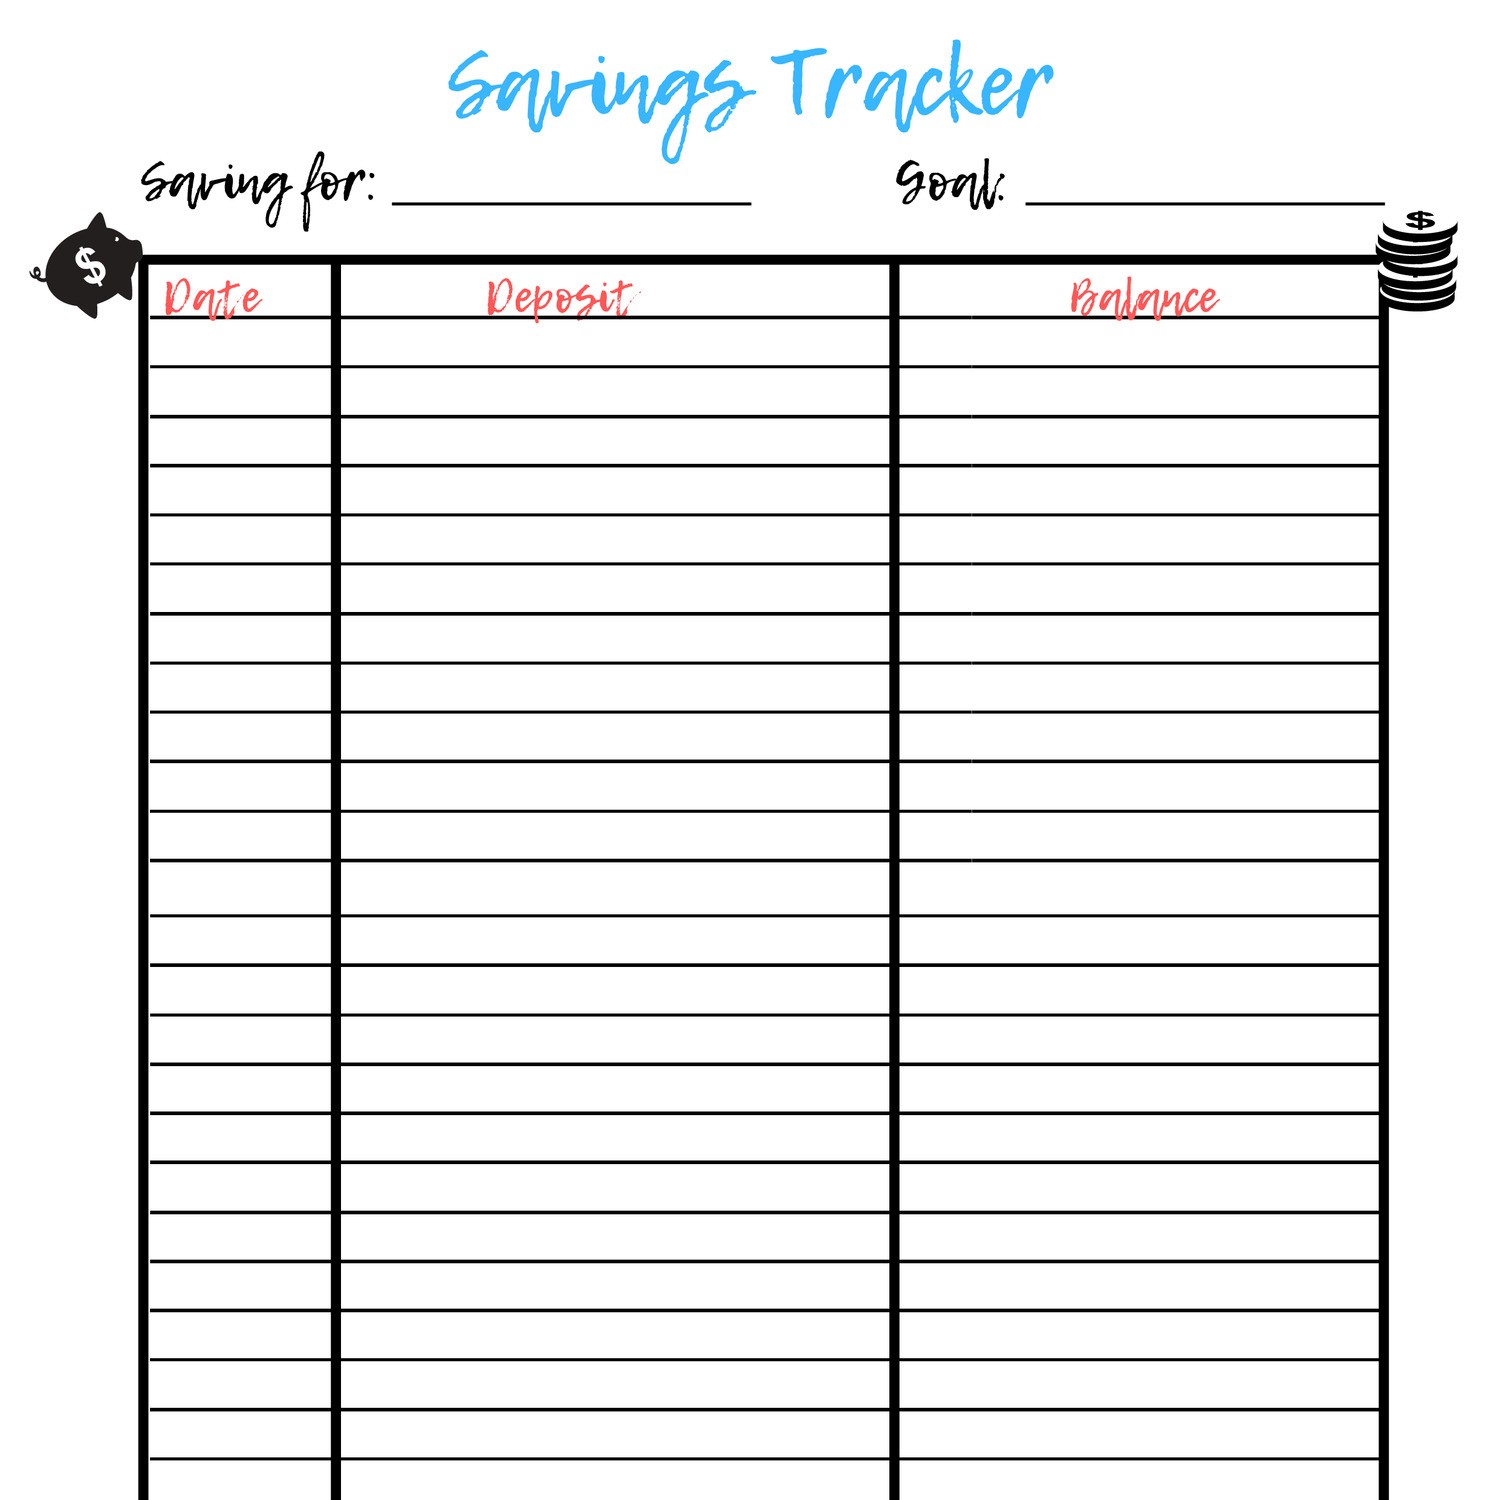 Savings Tracker.pdf DocDroid